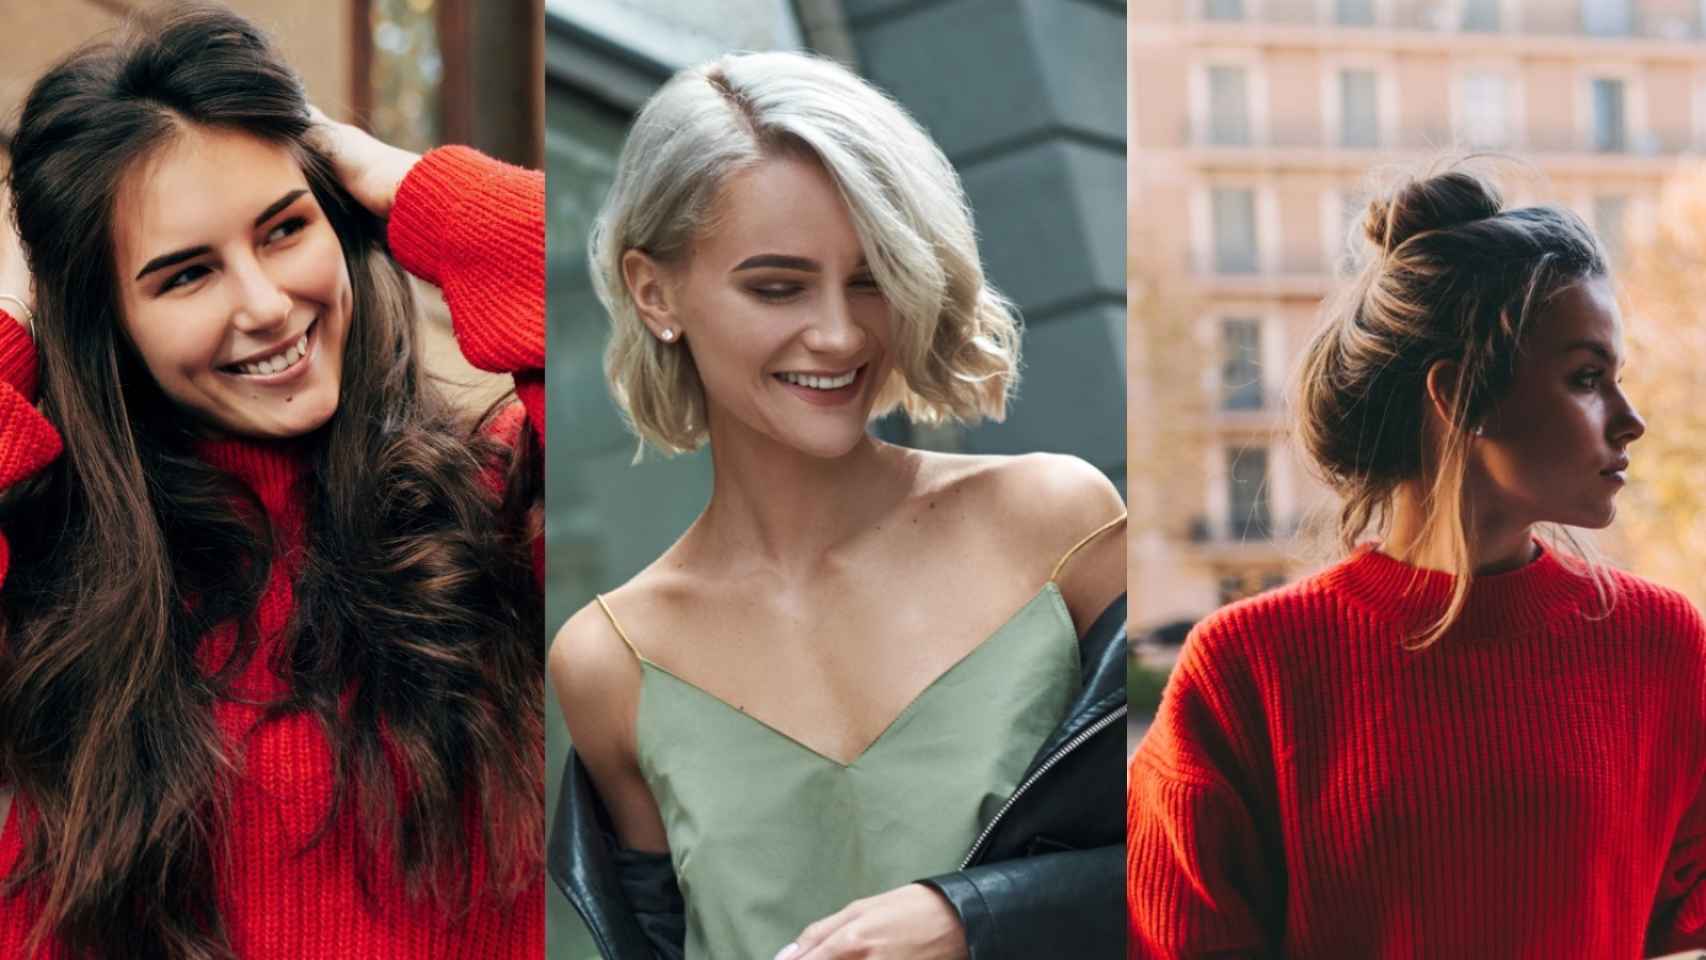 Tendencias de color de pelo y peinados para otoño invierno 2022  Tendencias   Revista de Maquillaje y Pelo  Bettina Frumboli